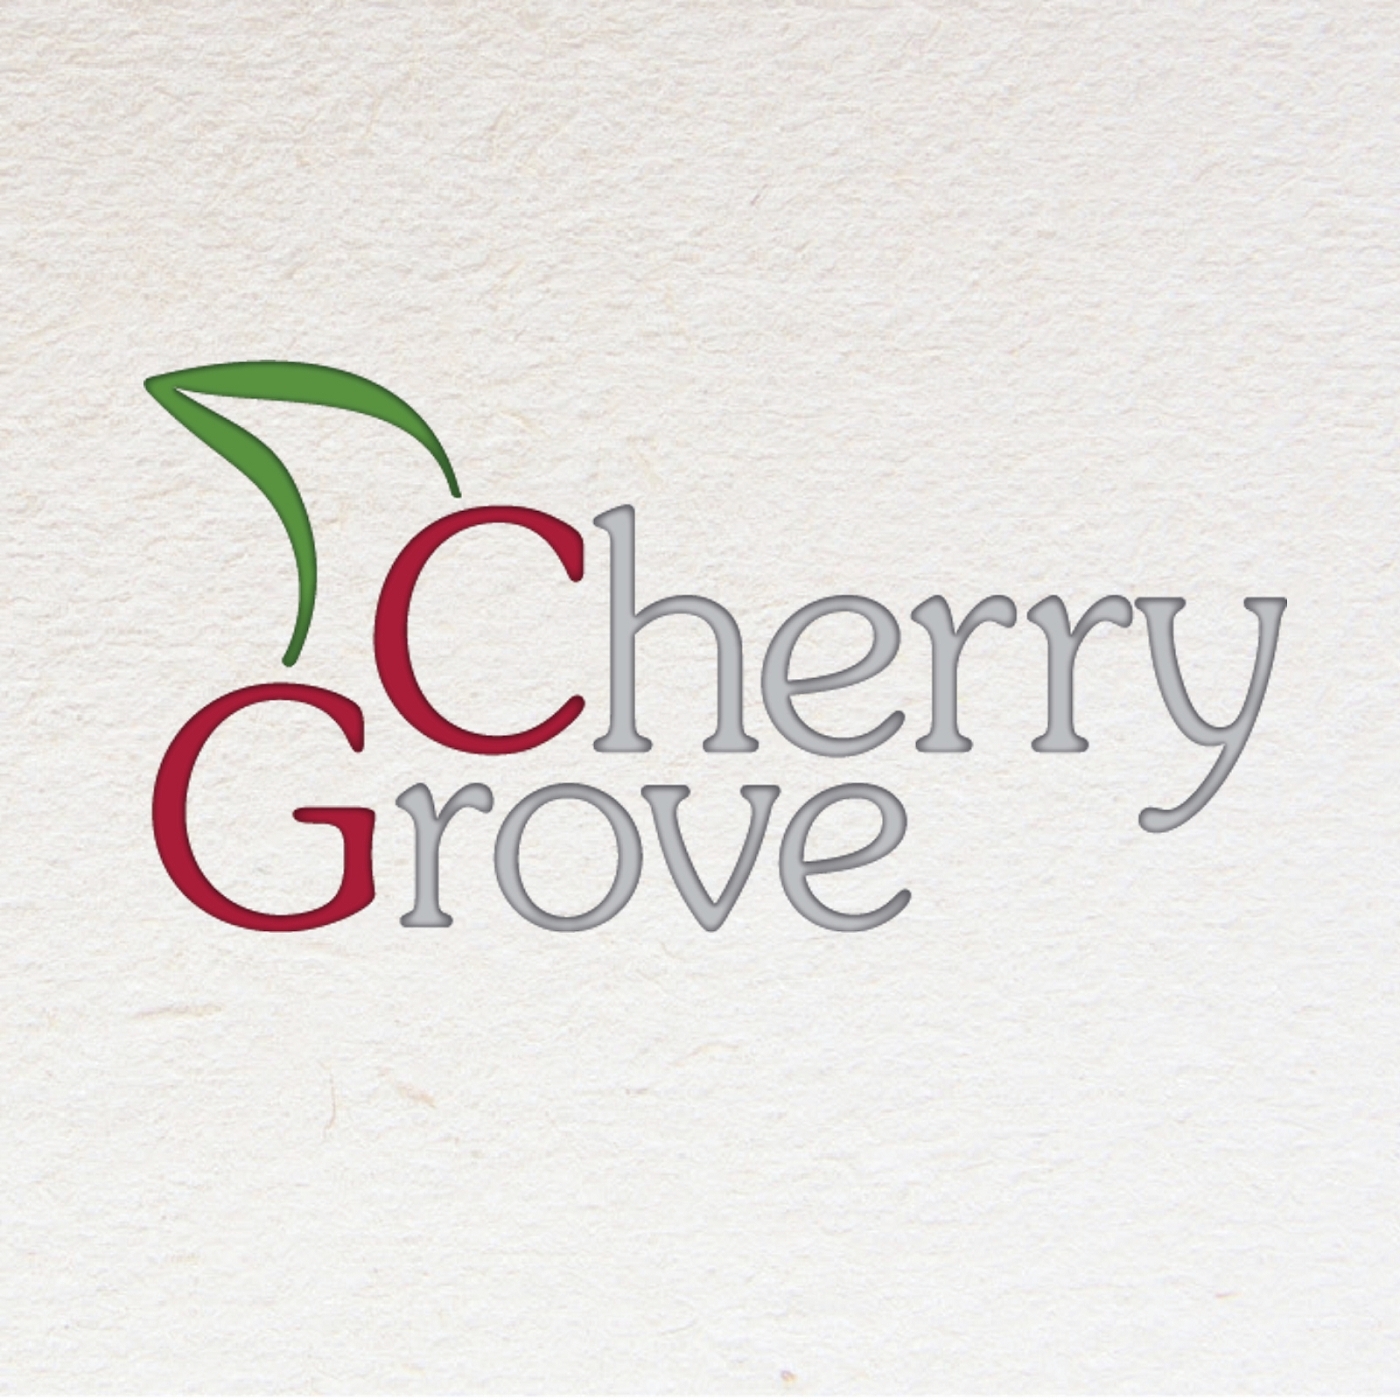 Cherrygrove